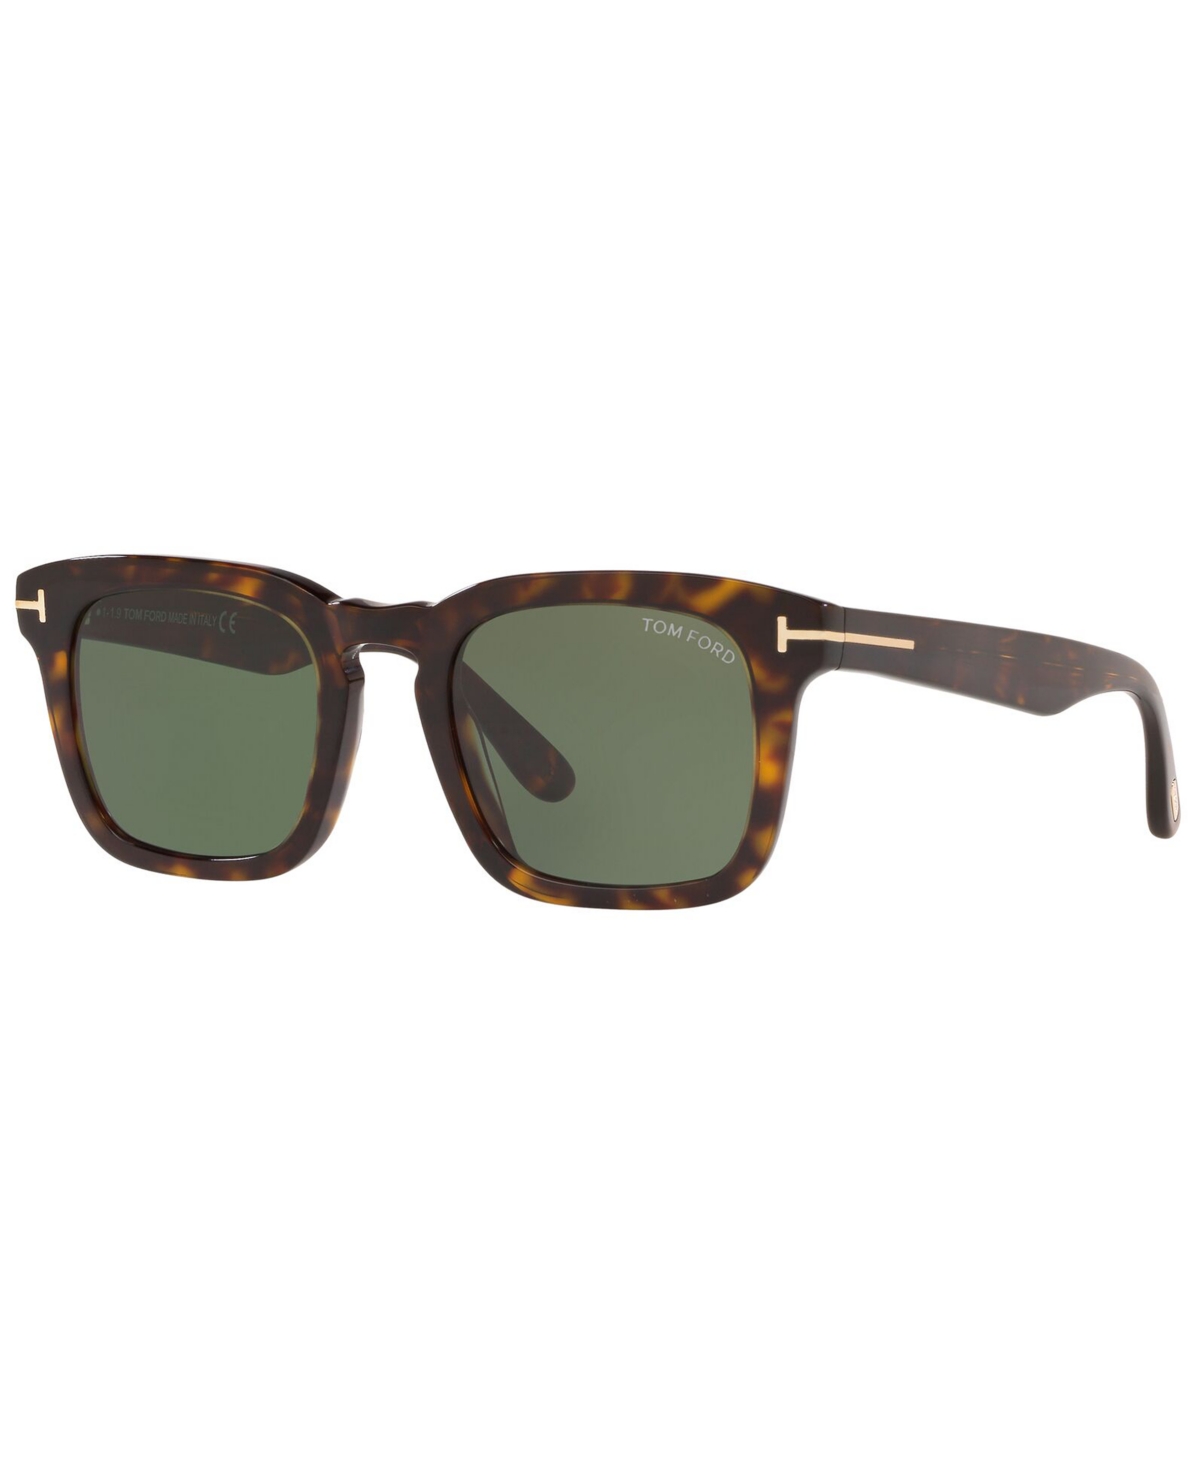 Tom Ford Men's Sunglasses, Tr001097 In Tortoise,green